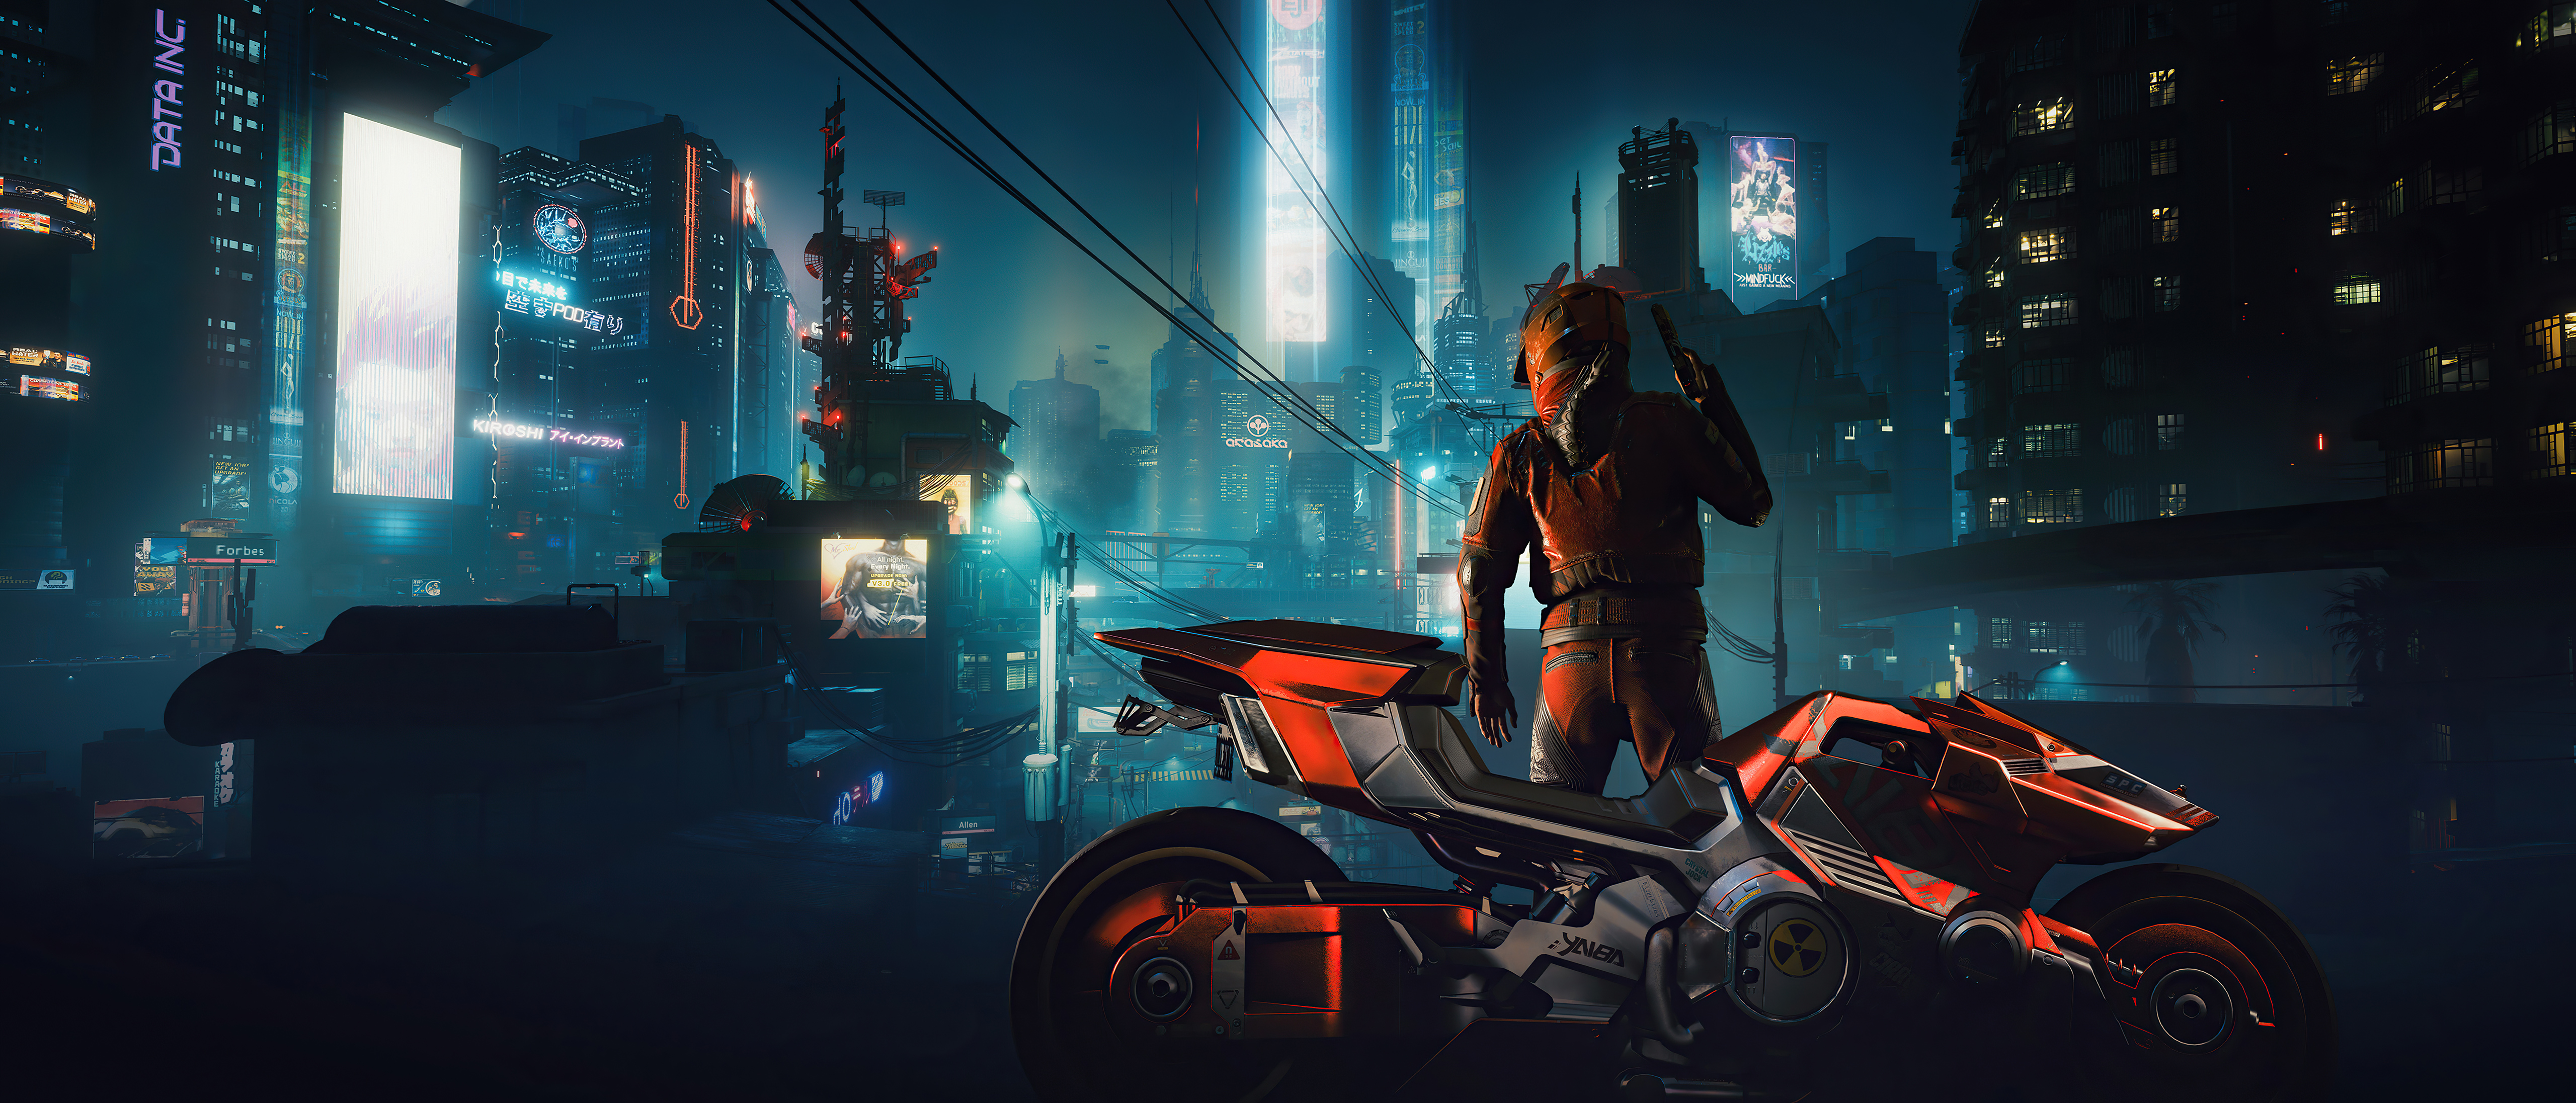 Descarga gratuita de fondo de pantalla para móvil de Ciudad, Motocicleta, Futurista, Videojuego, Ciberpunk, Cyberpunk 2077.